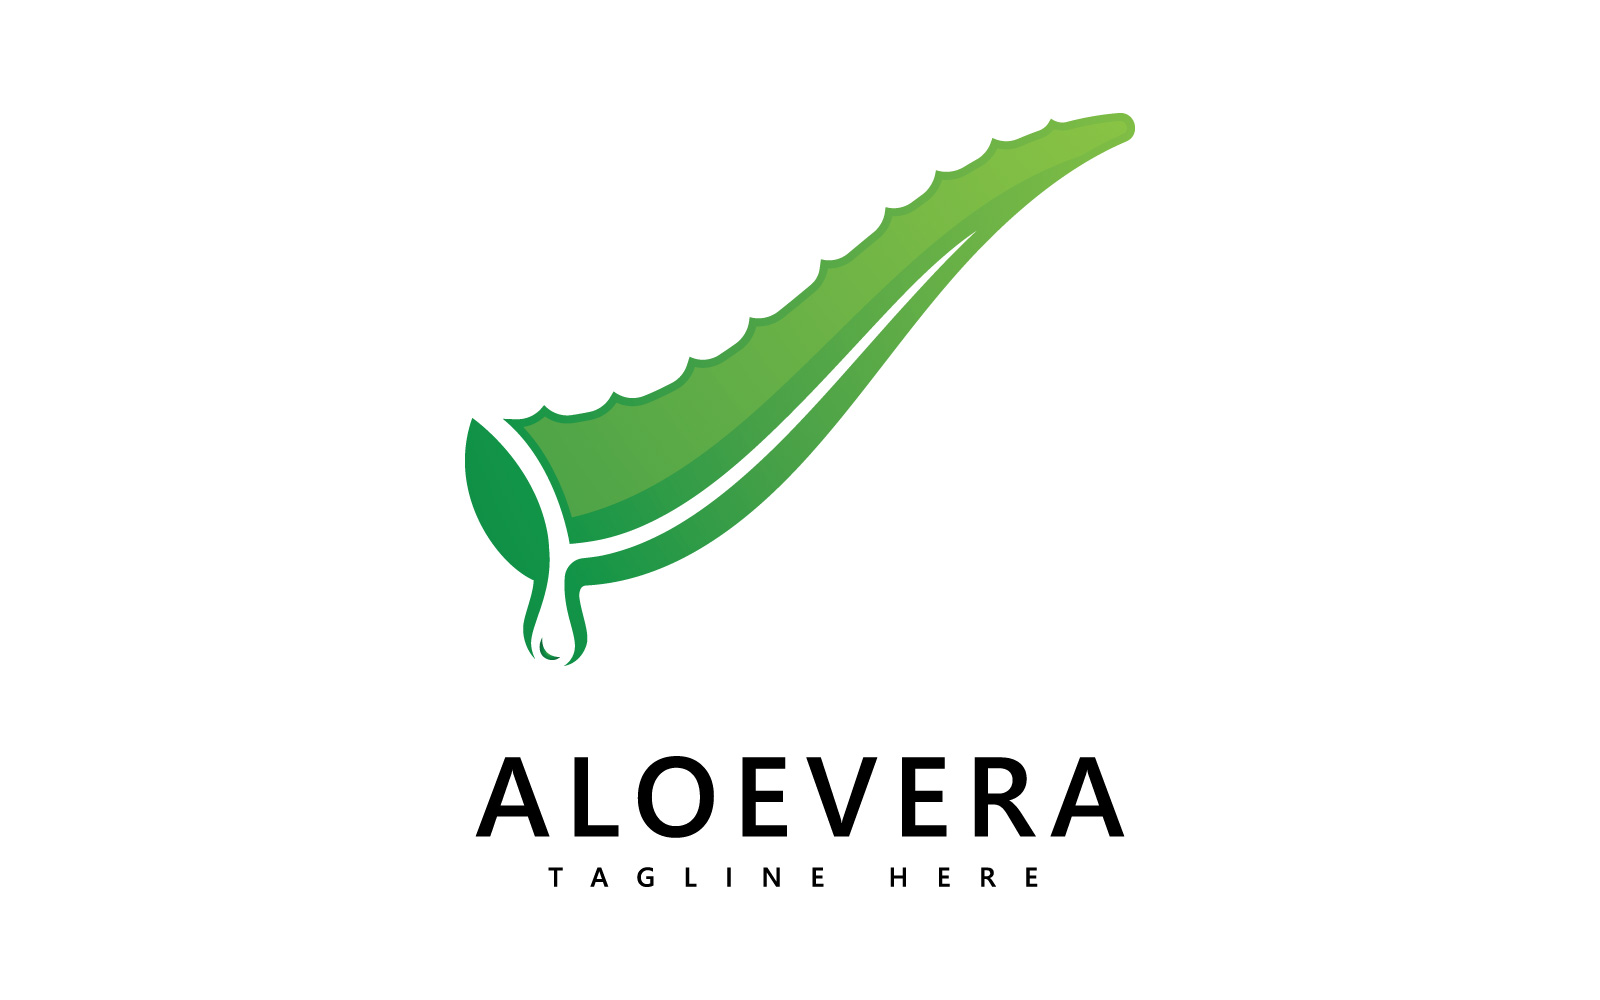 Aloe vera plant logo drop vector design. Aloe vera gel logo icon V1